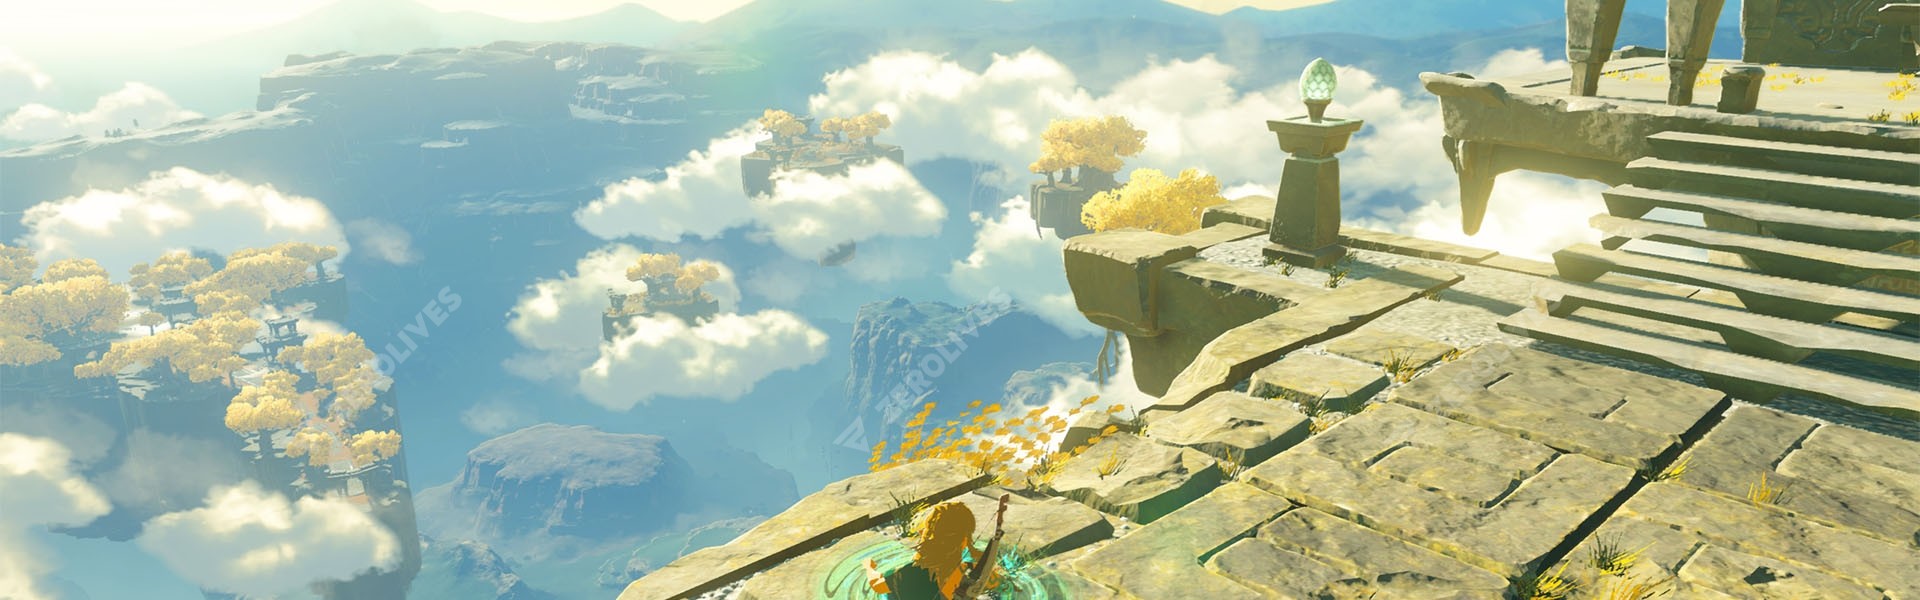 The Legend of Zelda: Breath of the Wild sequel